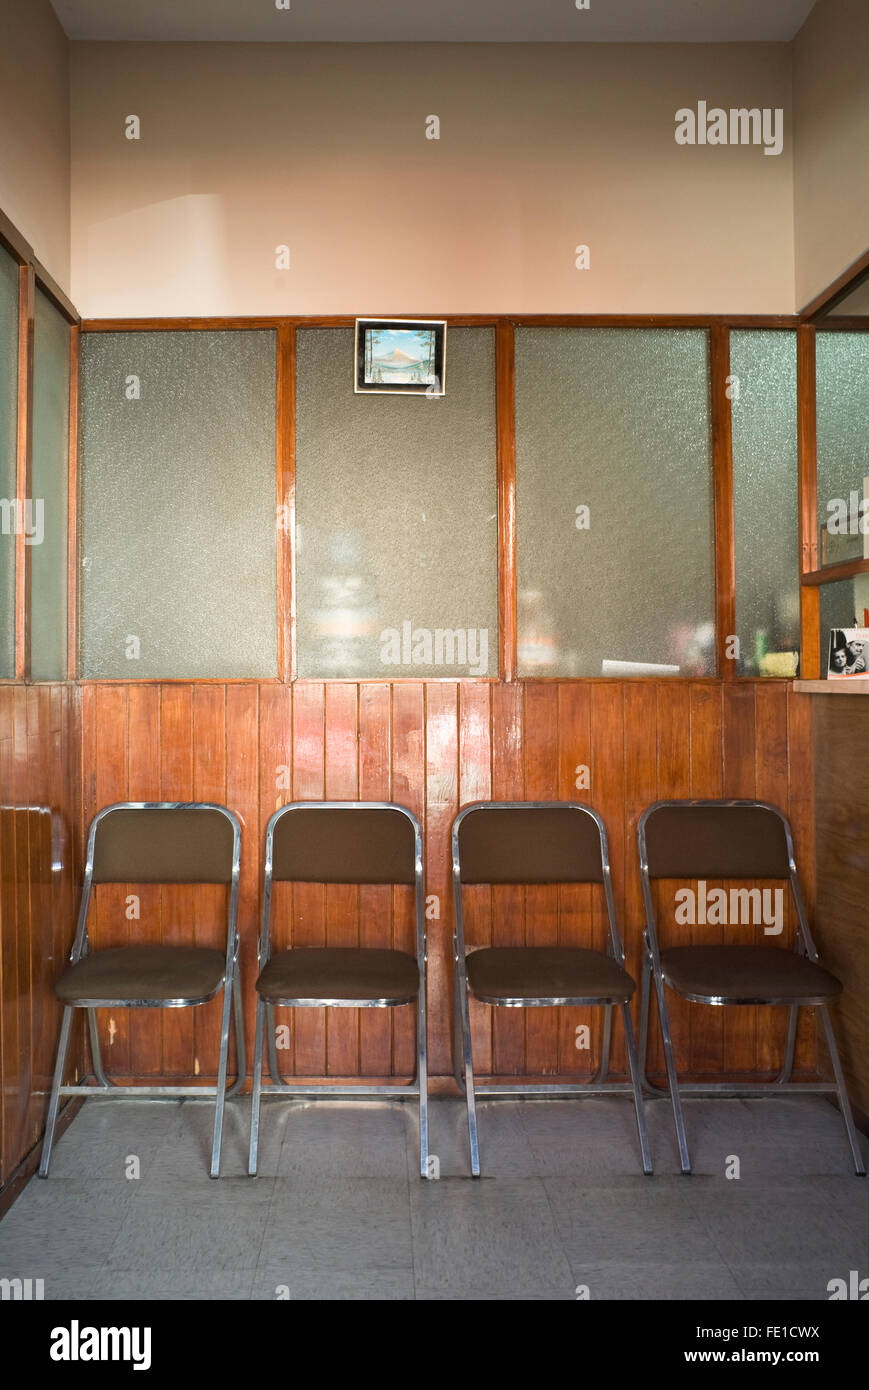 Sedie per sala d'attesa immagini e fotografie stock ad alta risoluzione -  Alamy